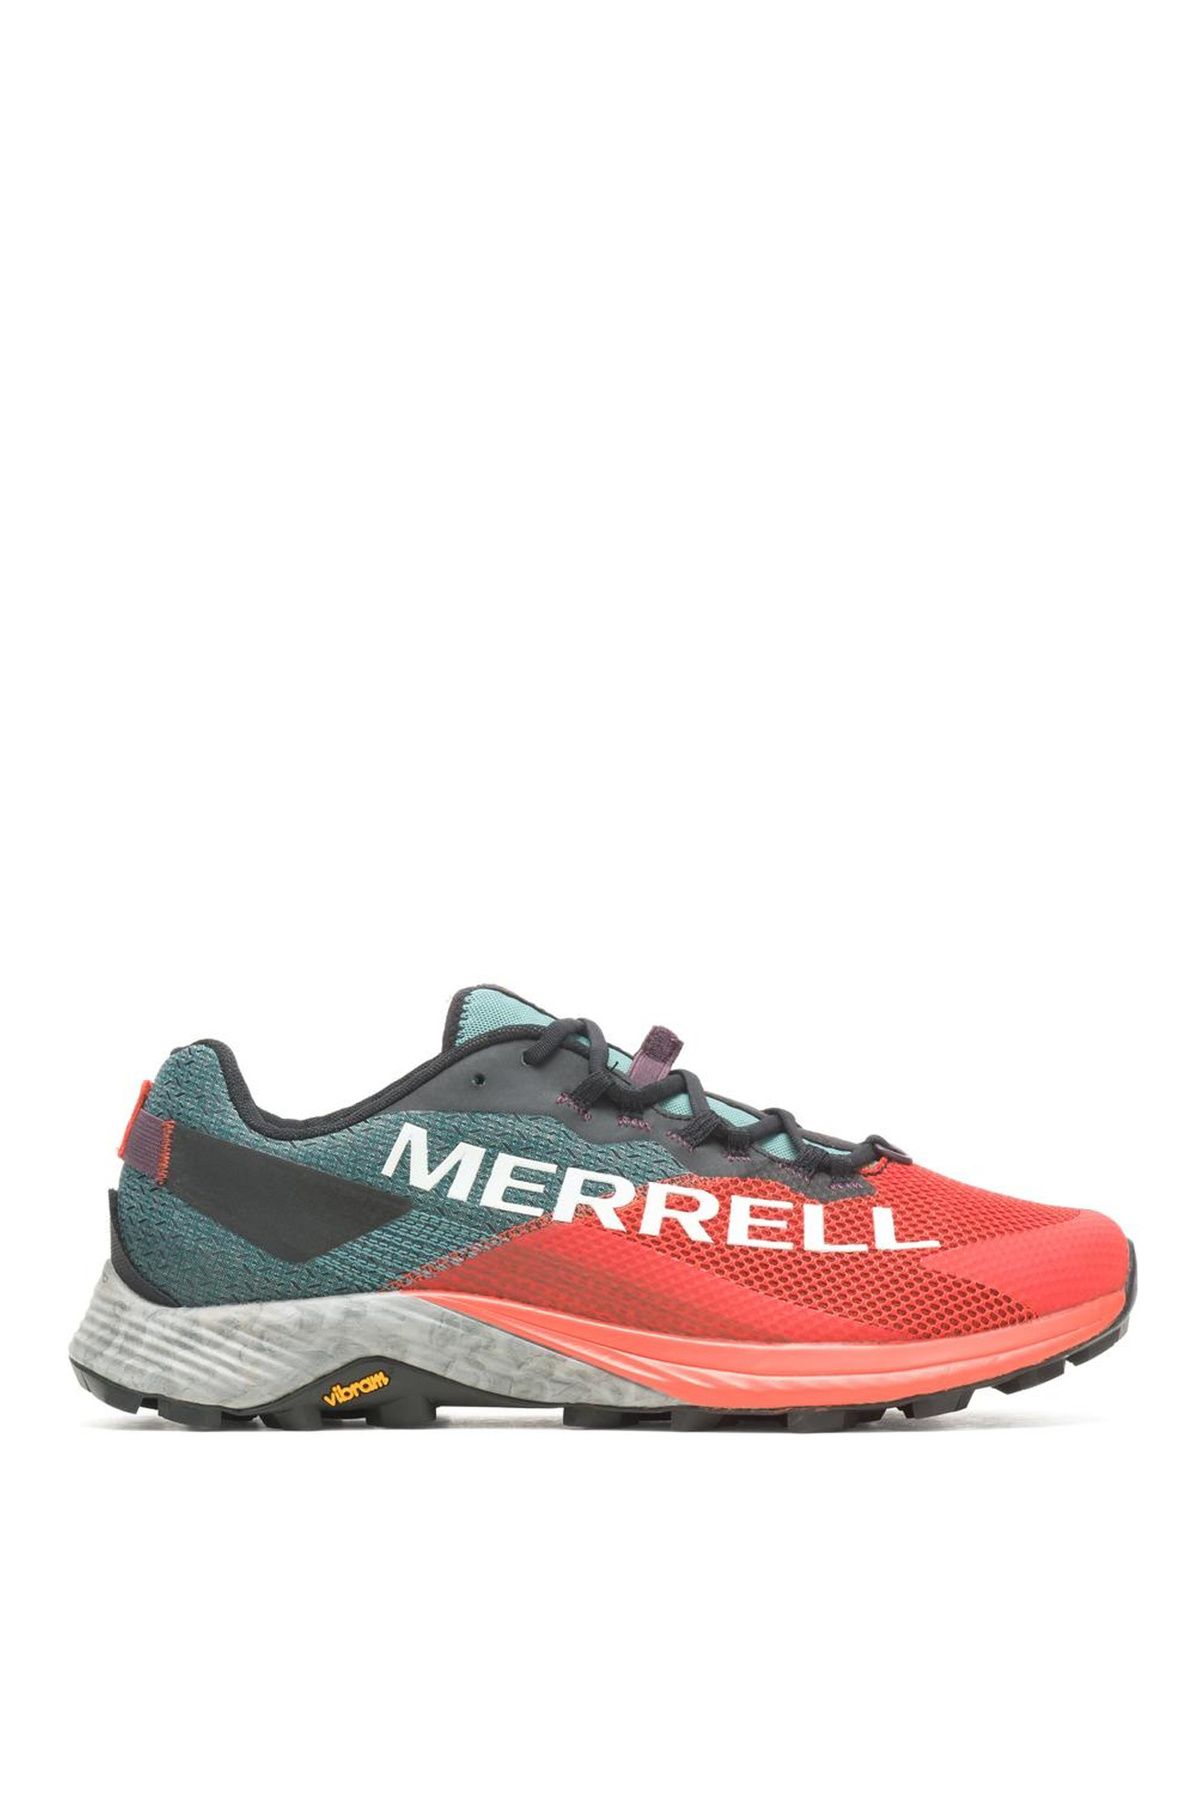 Merrell Çok Renkli Erkek Outdoor Ayakkabısı J067141 25178 MTL LONG SKY 2